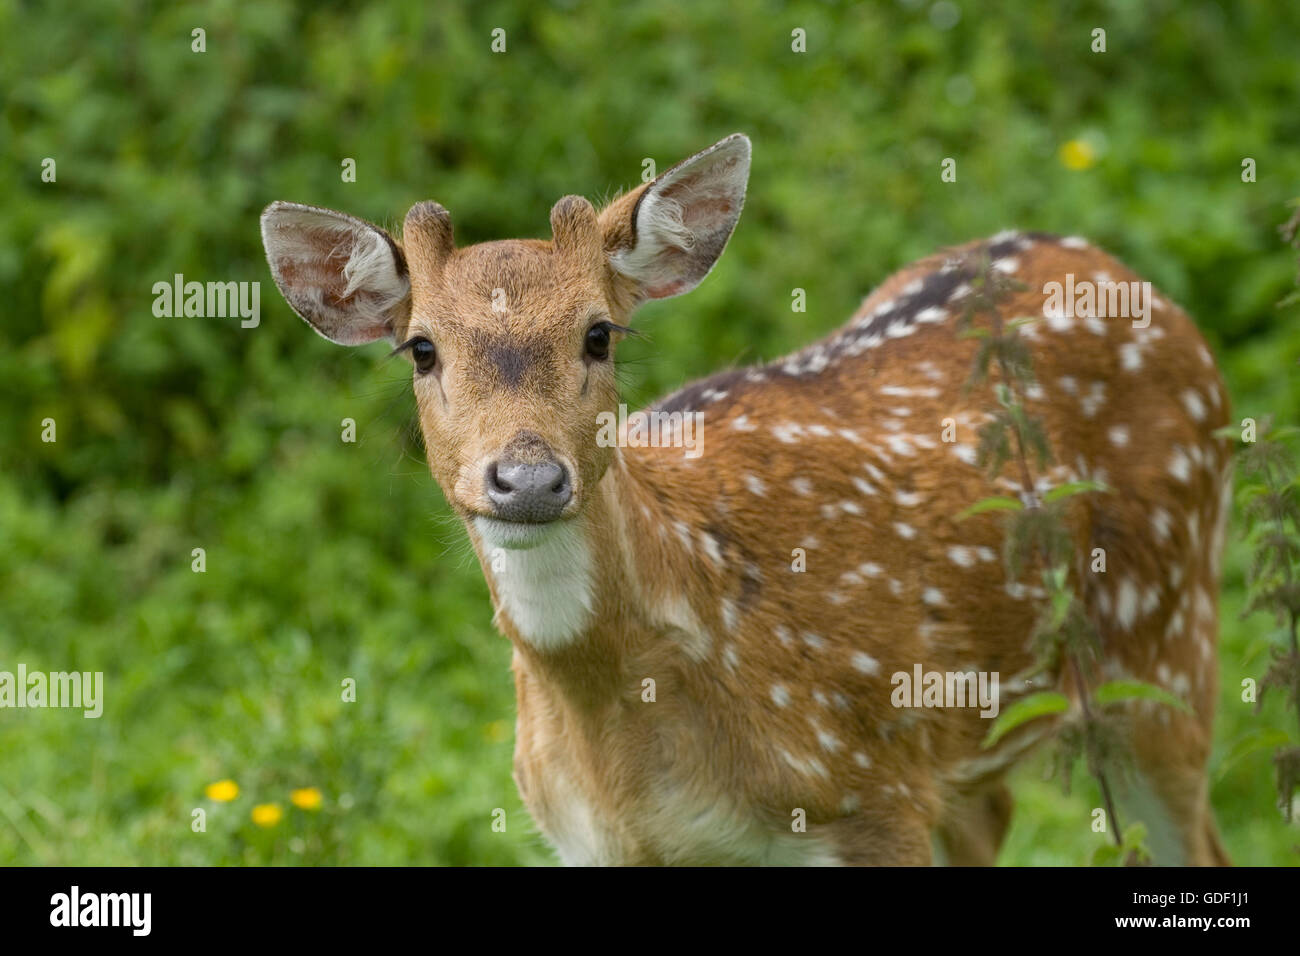 axis deer Stock Photo